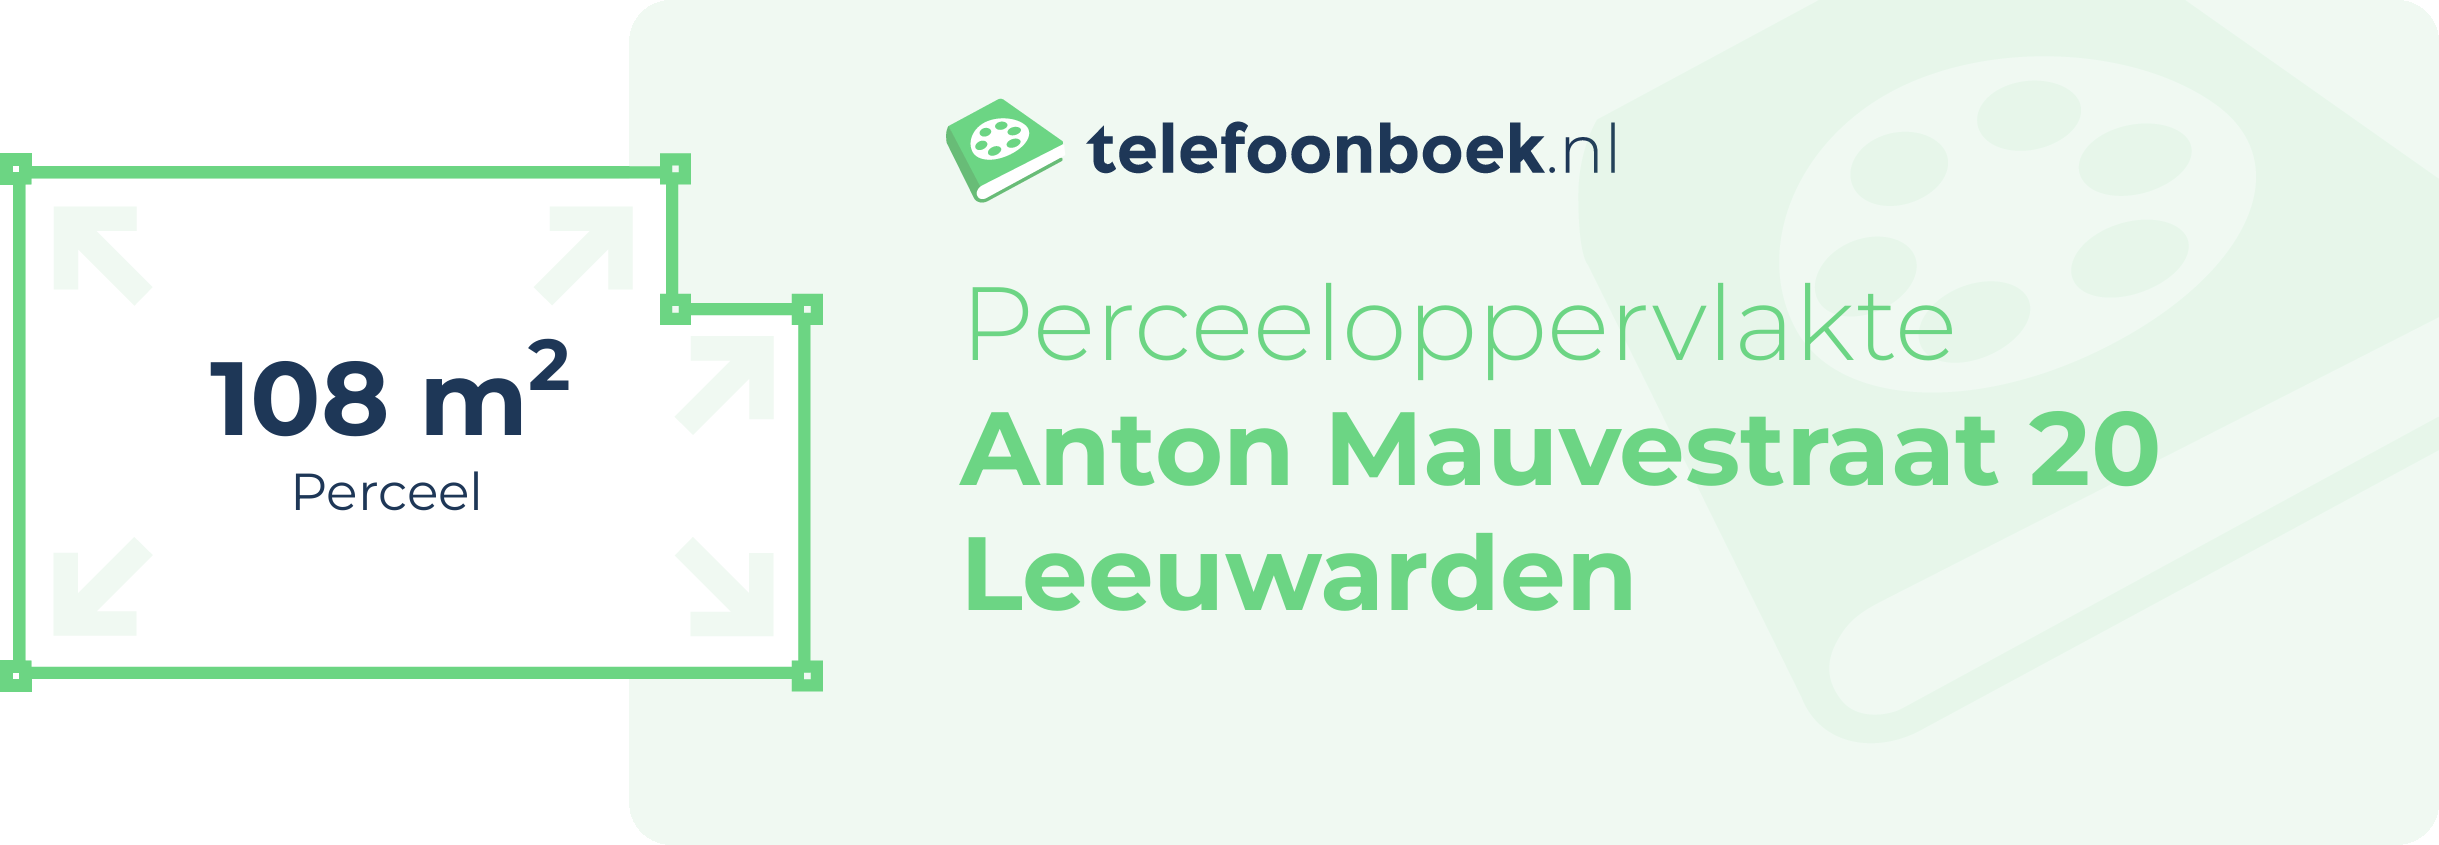 Perceeloppervlakte Anton Mauvestraat 20 Leeuwarden